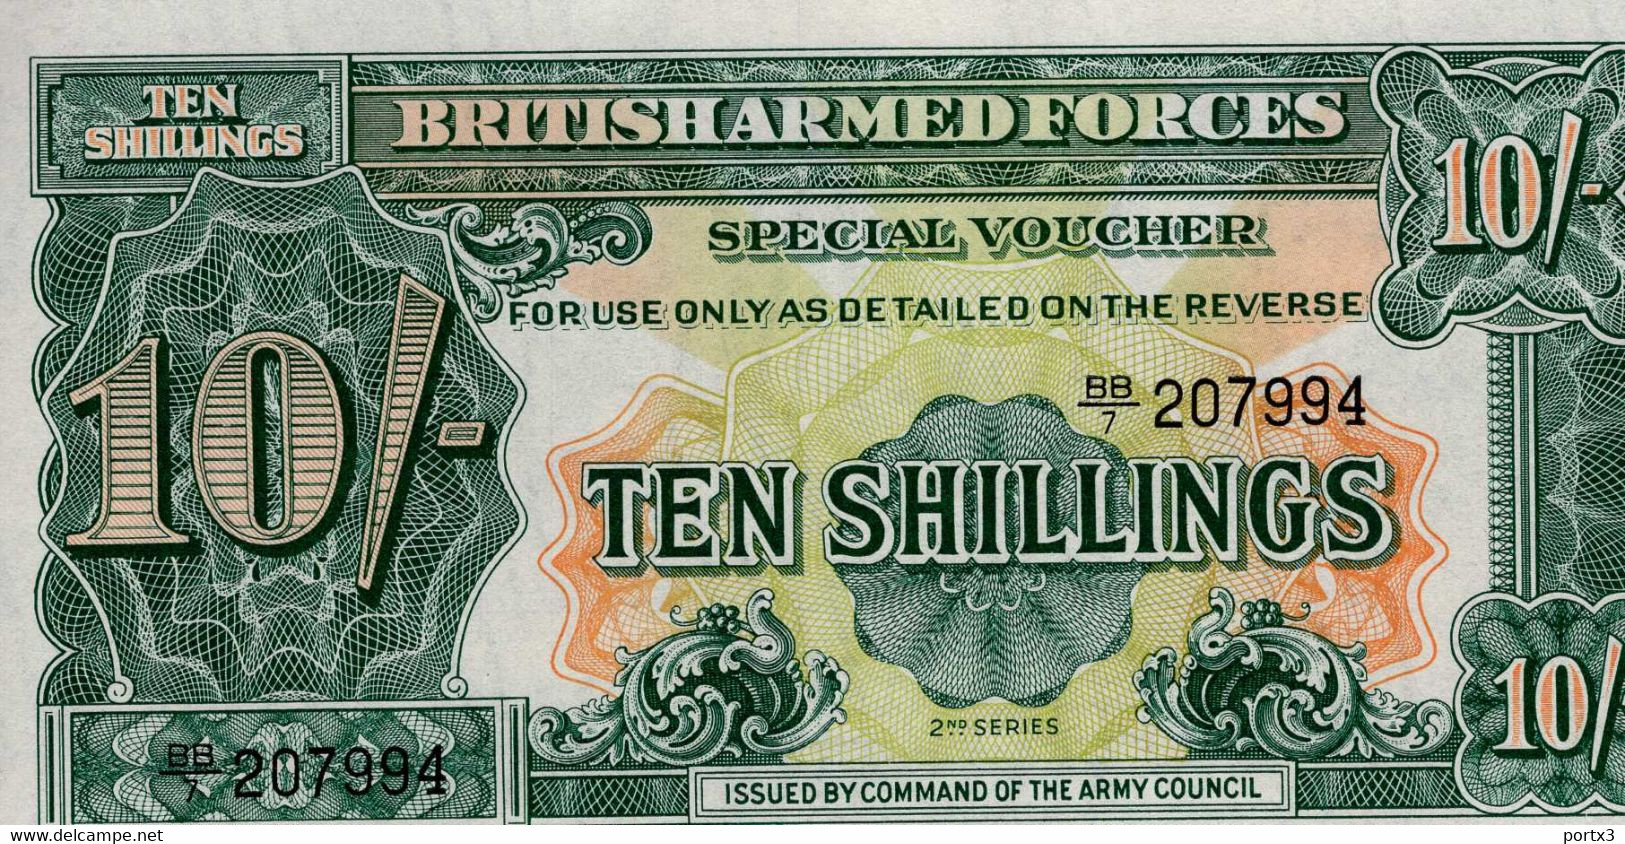 British Banknoten 5 Stück Each With Ten Shilling BB 7 - Fuerzas Armadas Británicas & Recibos Especiales